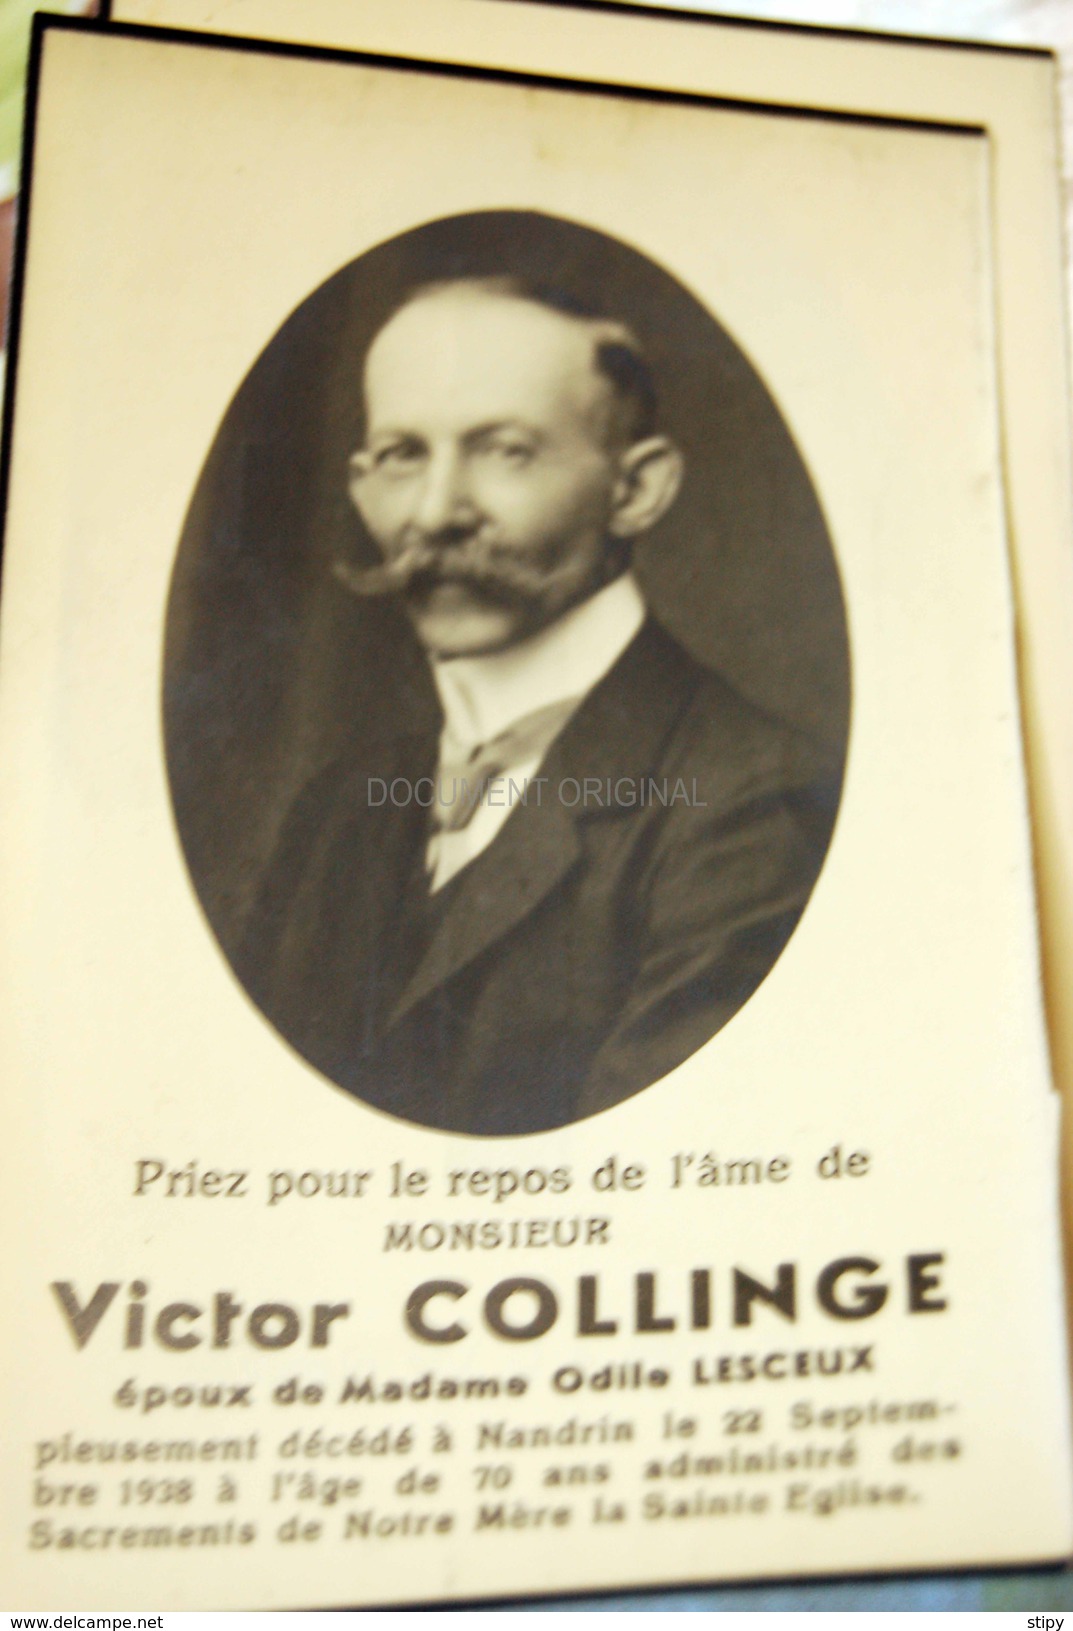 Victor Collinge / Odile Lesceux + Nandrin 22-9-1938 - Nandrin